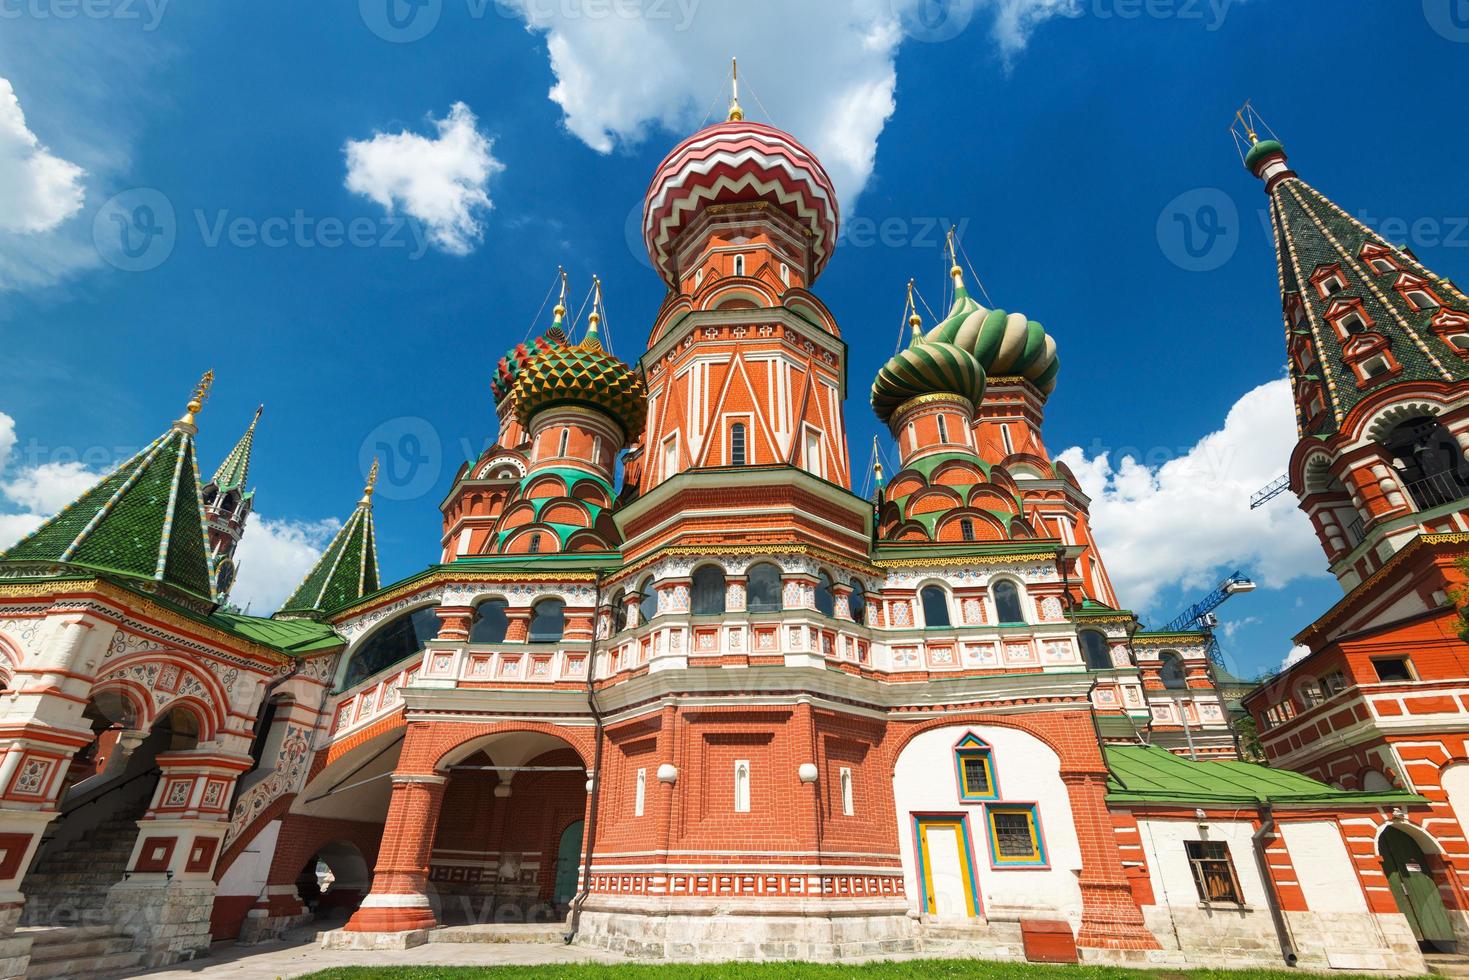 Saint basil kathedraal op het Rode plein in Moskou, Rusland foto